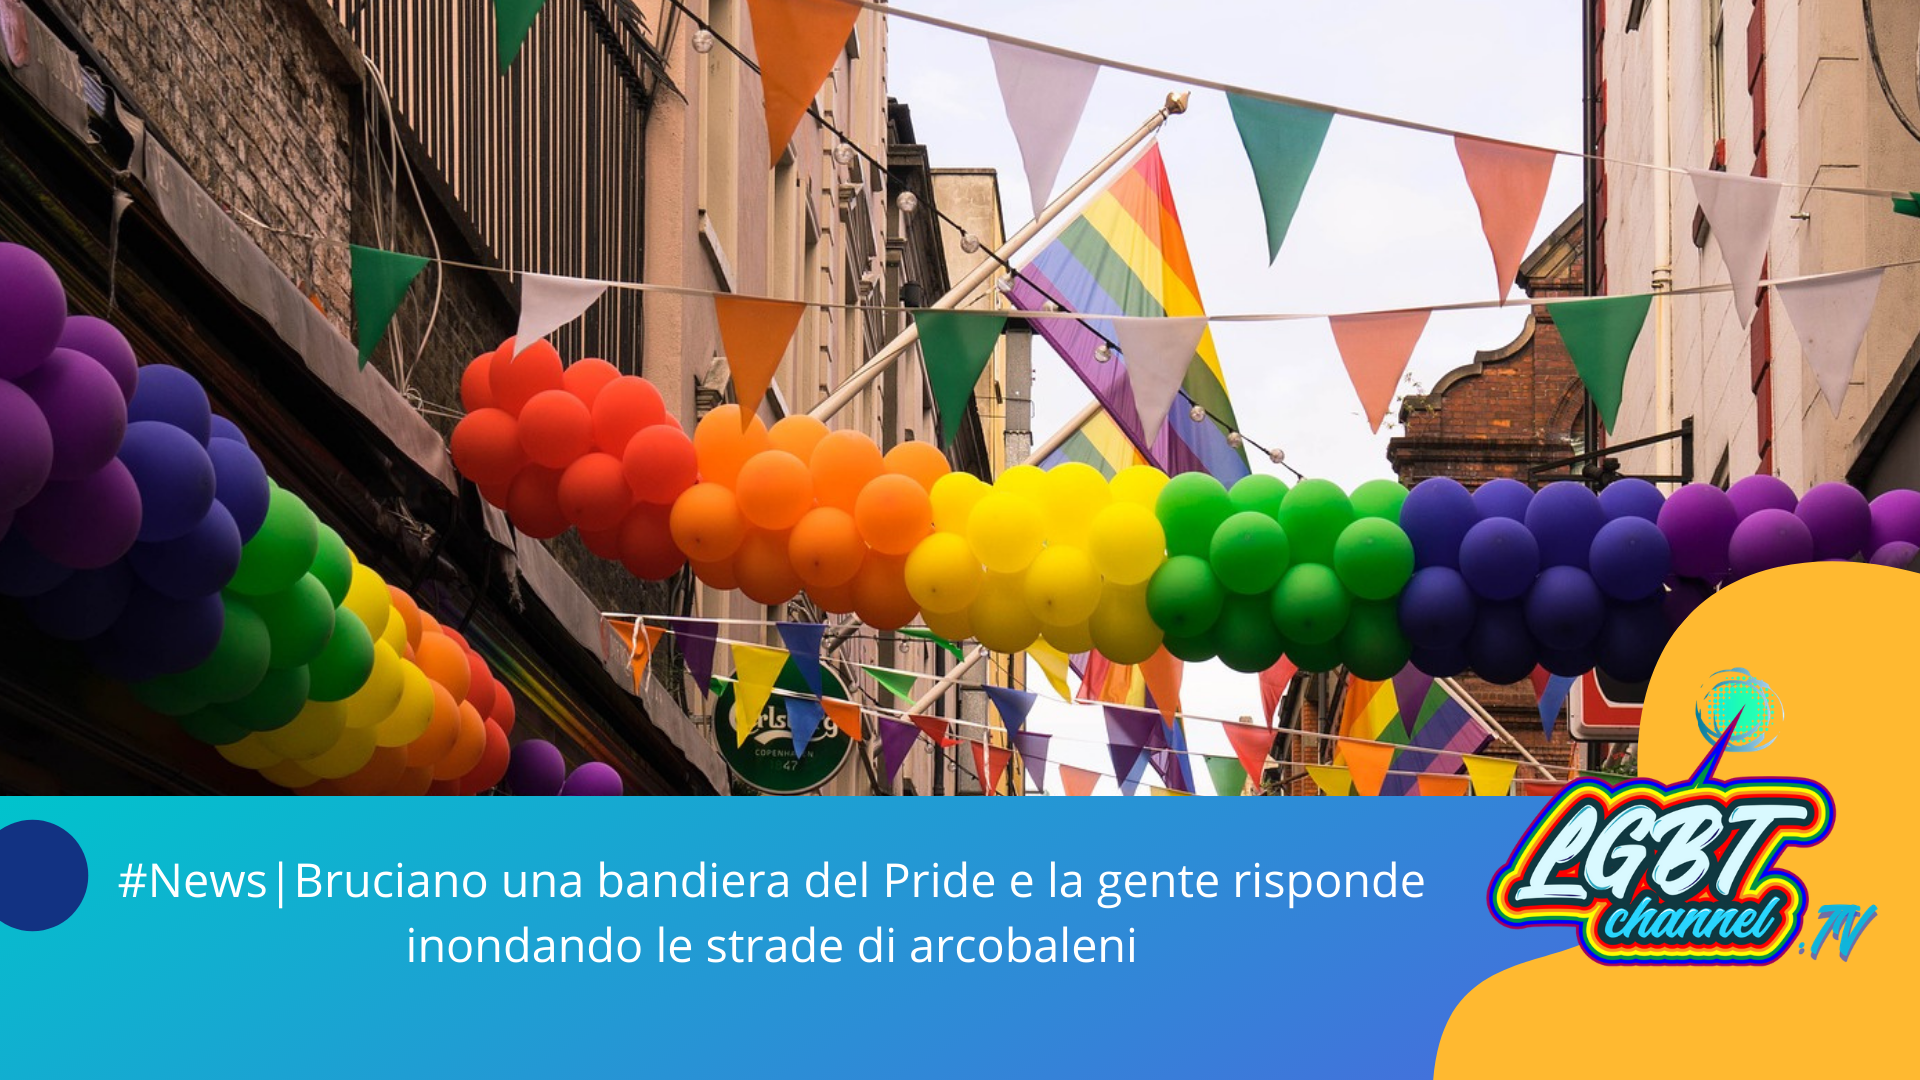 #News | Bruciano una bandiera del Pride e la gente risponde inondando le strade di arcobaleni